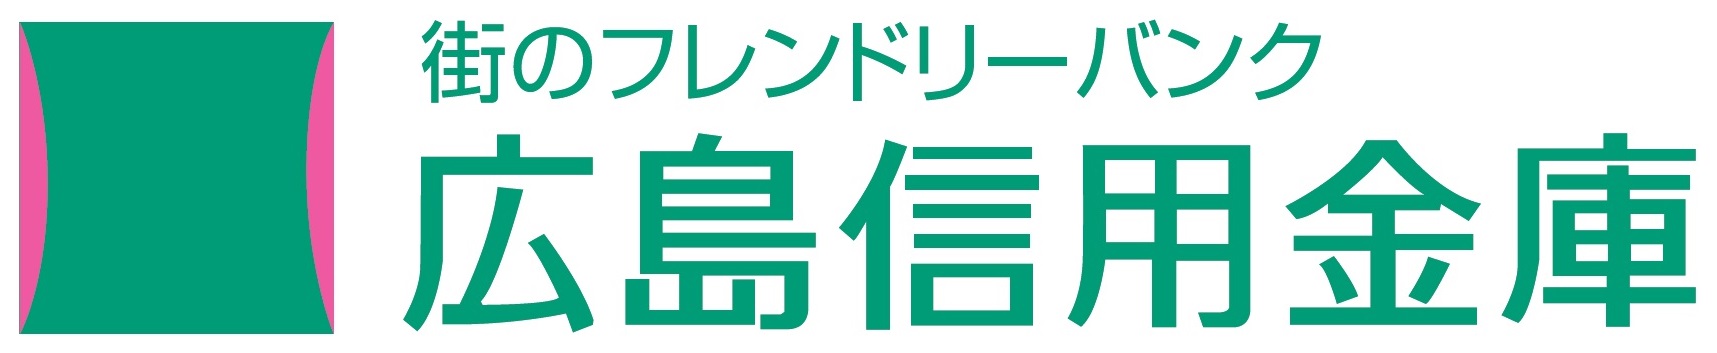 広島信用金庫予約カレンダー